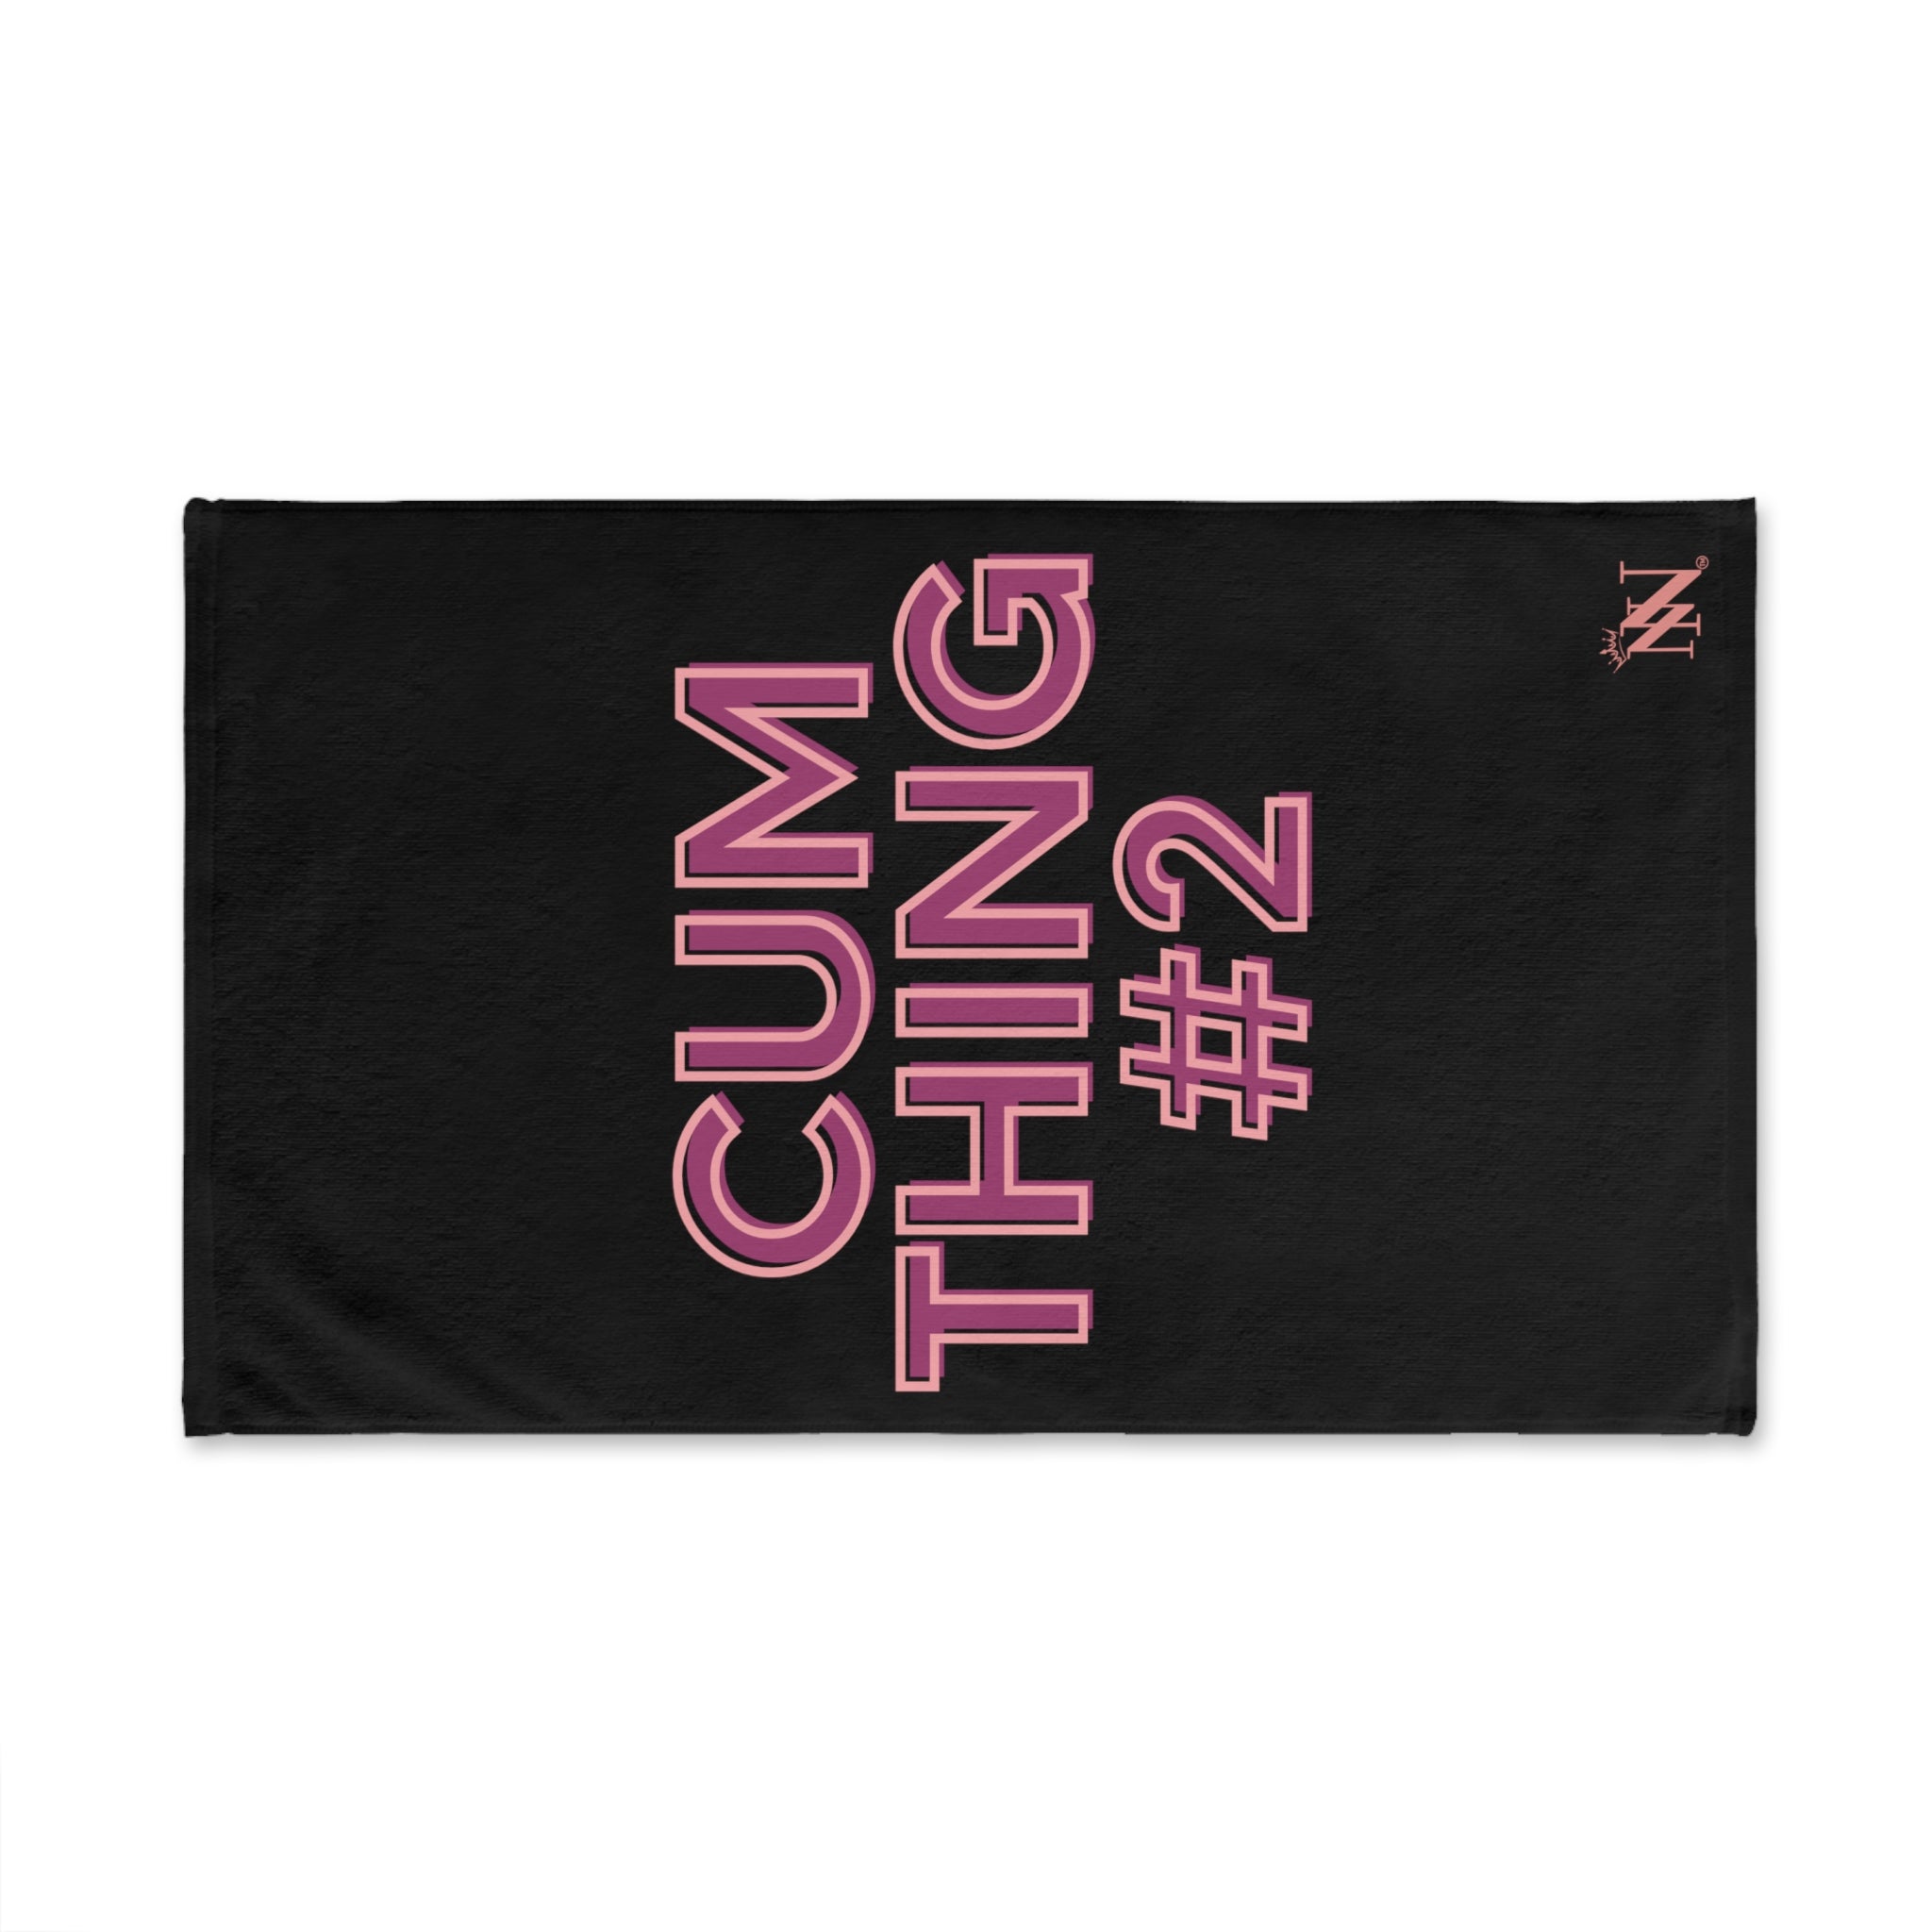 cum thing #2 cum towel 